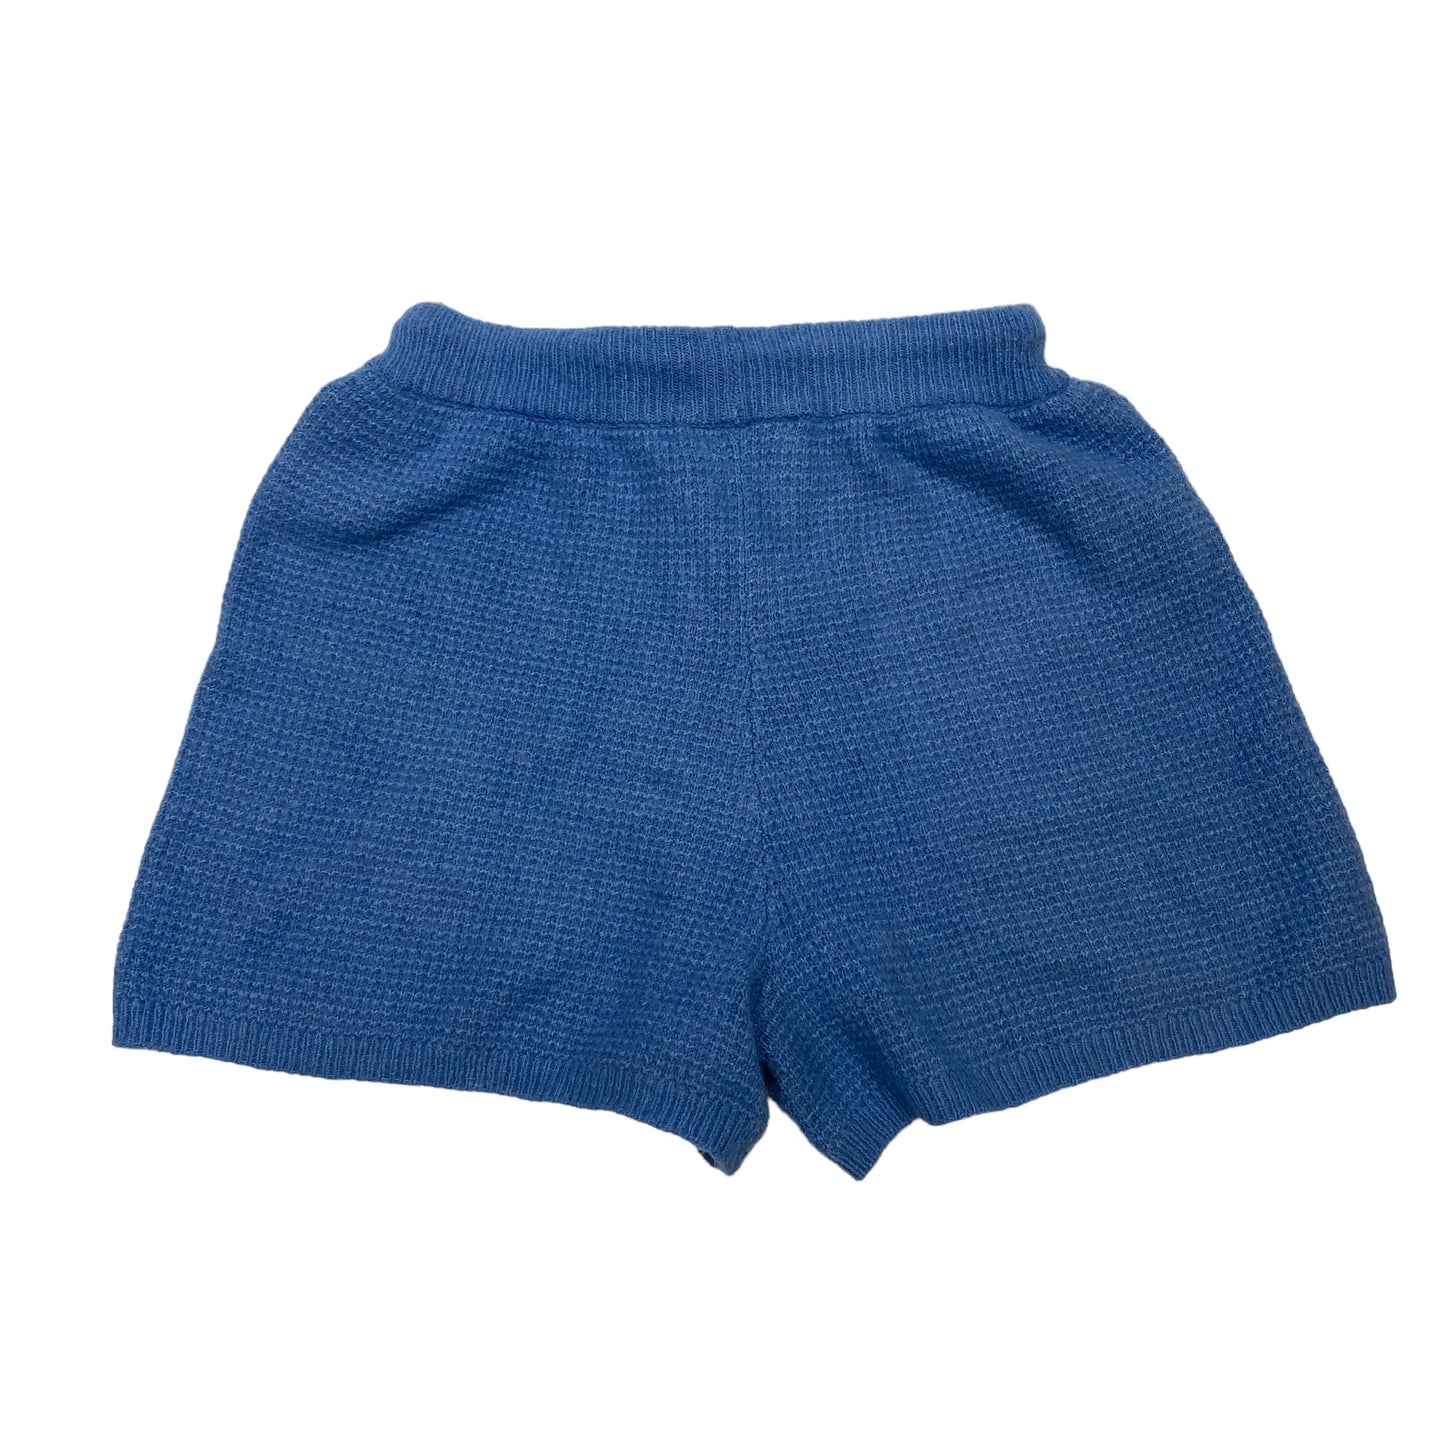 Blue Shorts Saturday/sunday, Size S